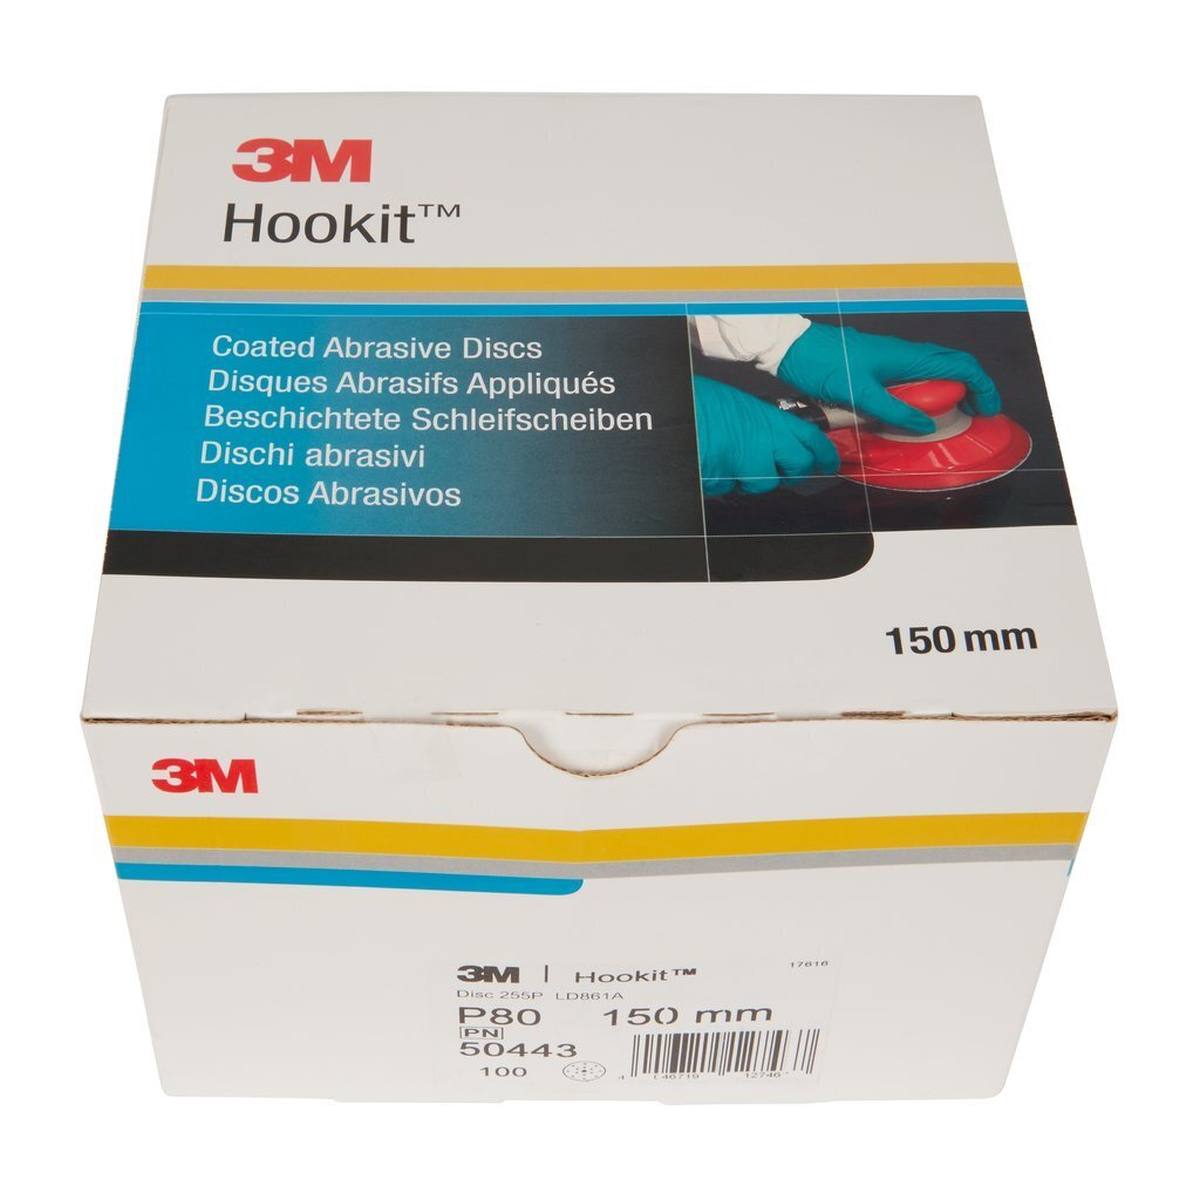 3M Hookit Gold Premium 255P+, 150 mm, P80, 15 agujeros #50443